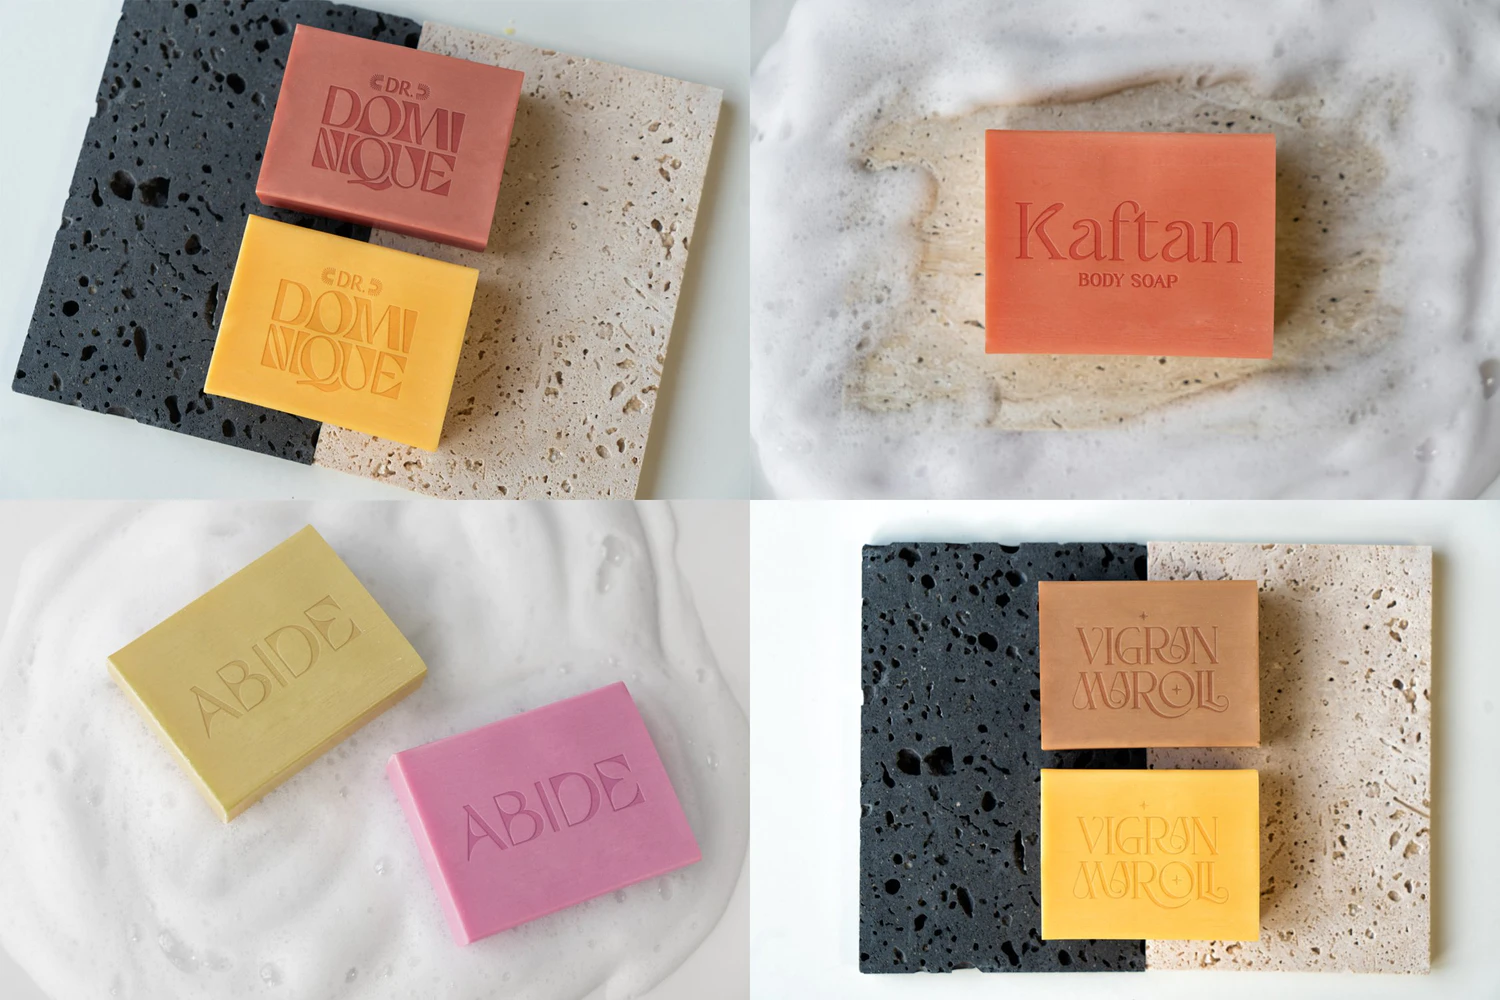 5297 17款时尚压花手工肥皂香皂设计展示贴图PSD样机模板素材 Soap MockUps Pack@GOOODME.COM